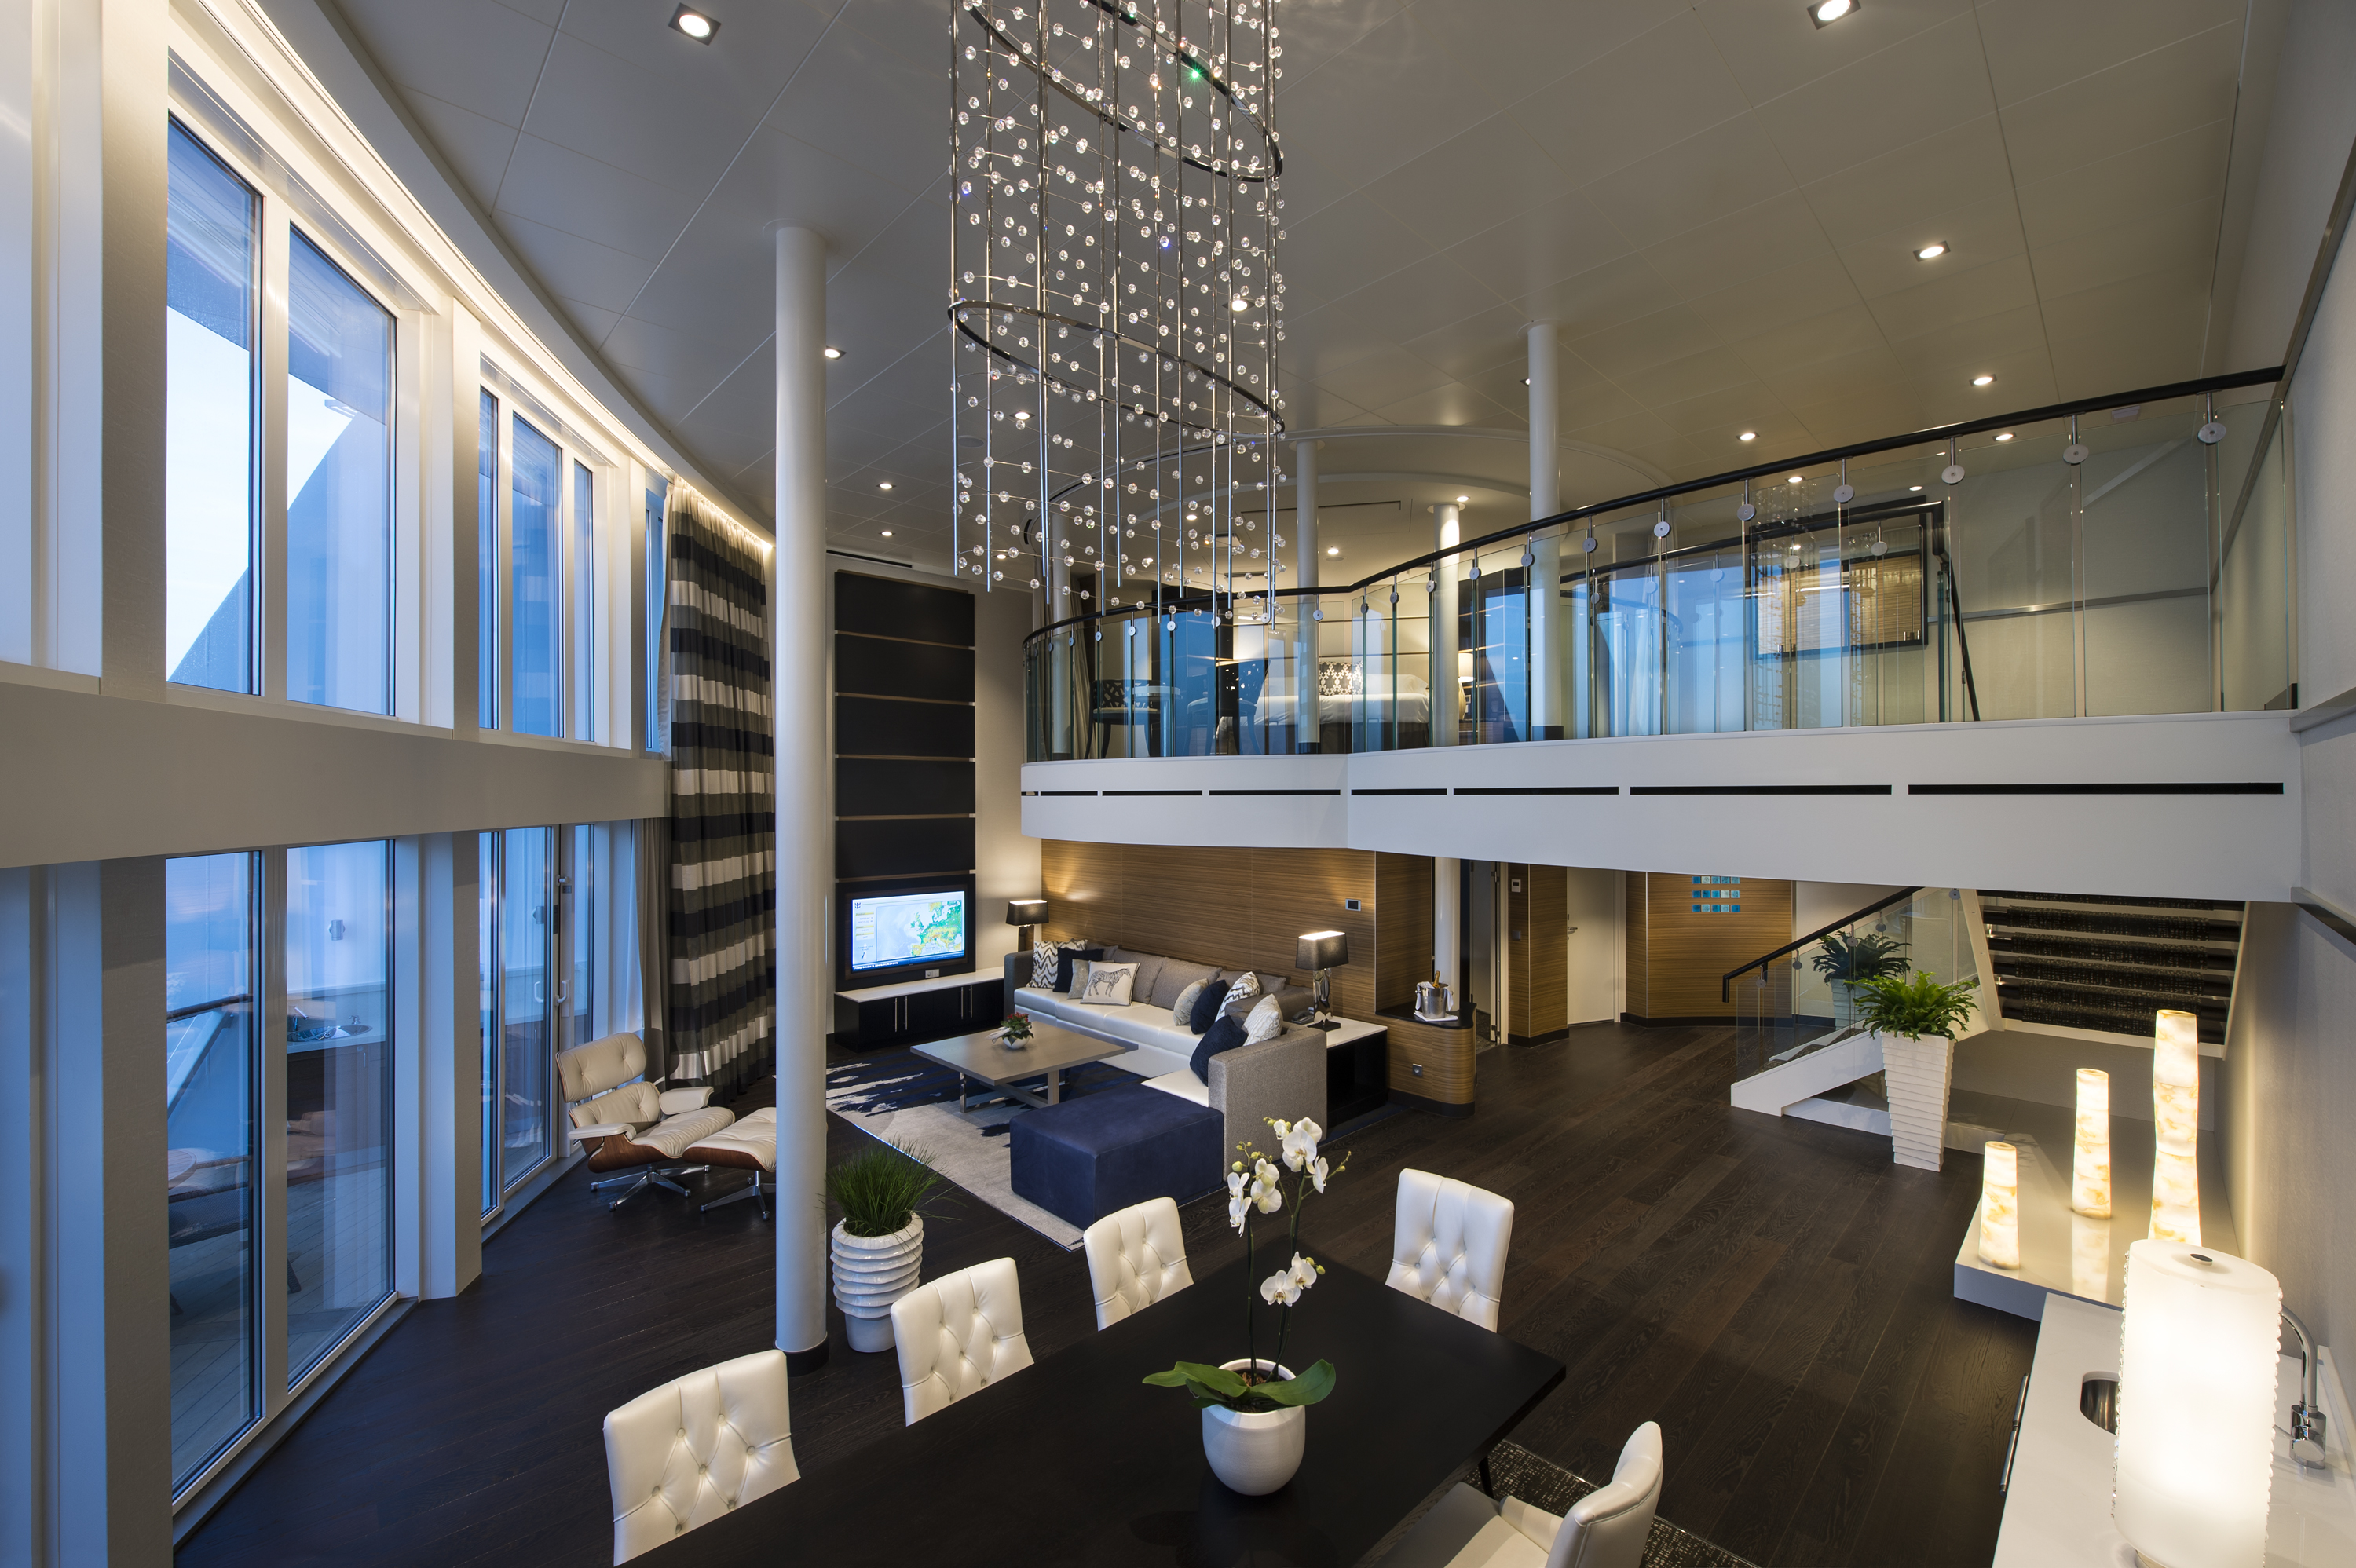 Kajuty Royal Loft Suites jsou dvoupatrové a pojmou až 6 osob.